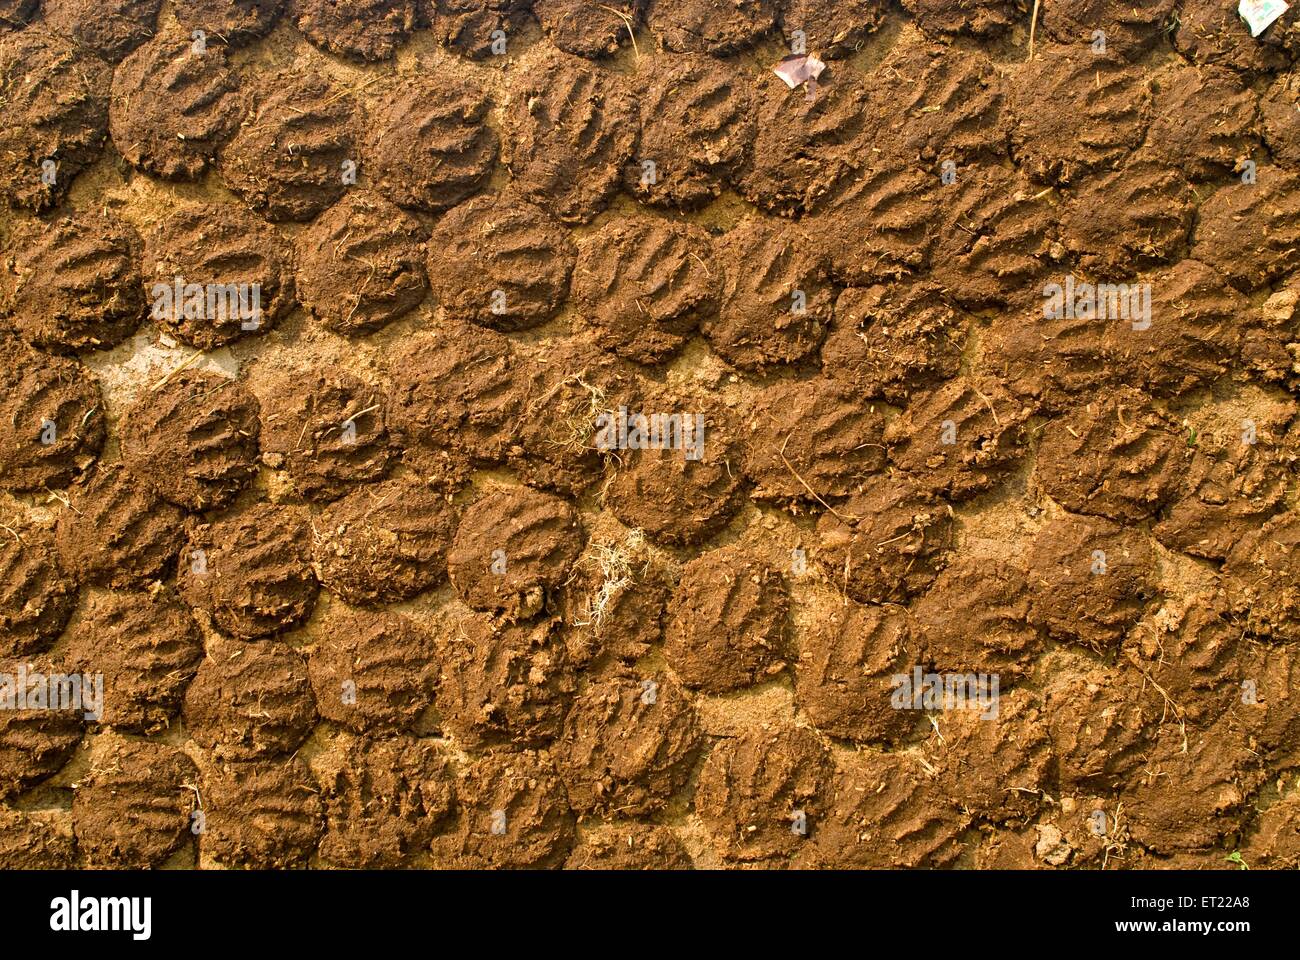 Pani di sterco di vacca che asciugano, Asansol, distretto di Paschim Bardhaman, Bengala occidentale, India, Asia Foto Stock